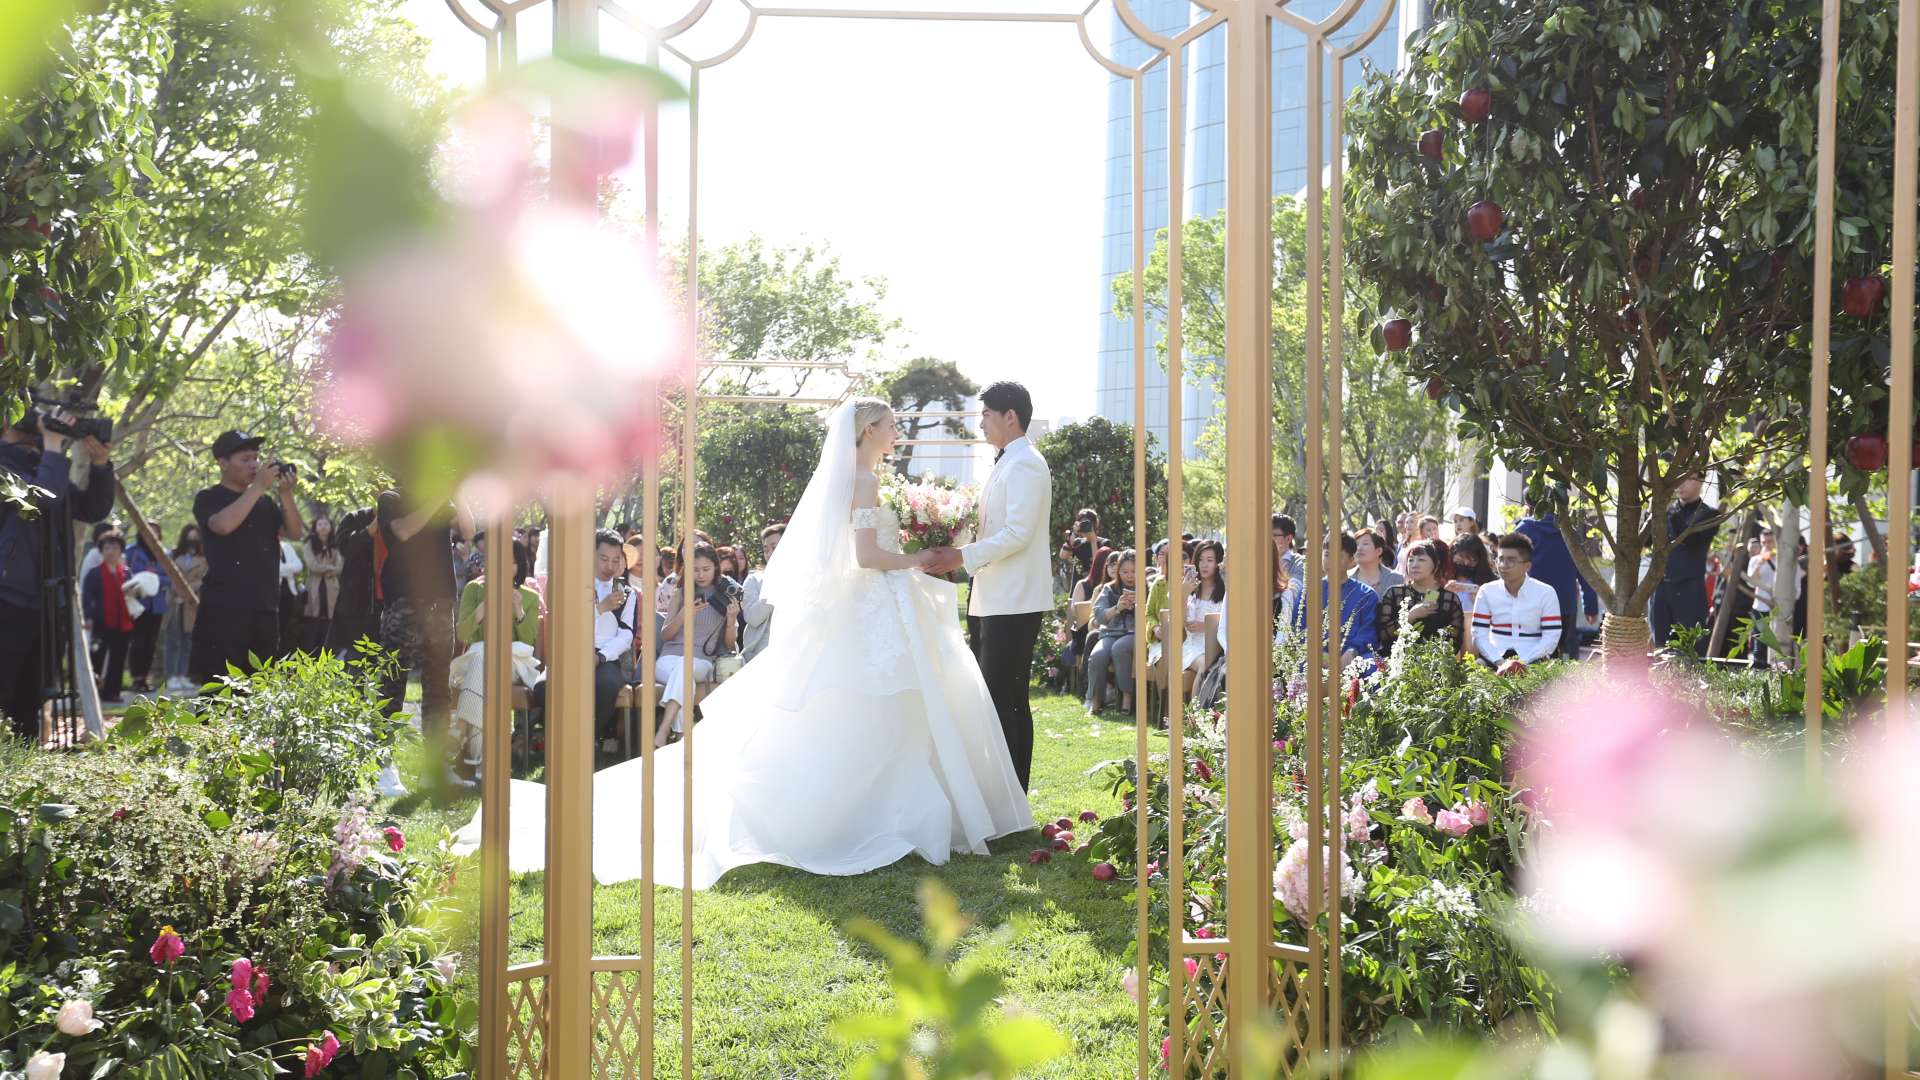 Në Tiranë martohen më pak, zbuloni qytetin që mban rekord për lidhje kurore